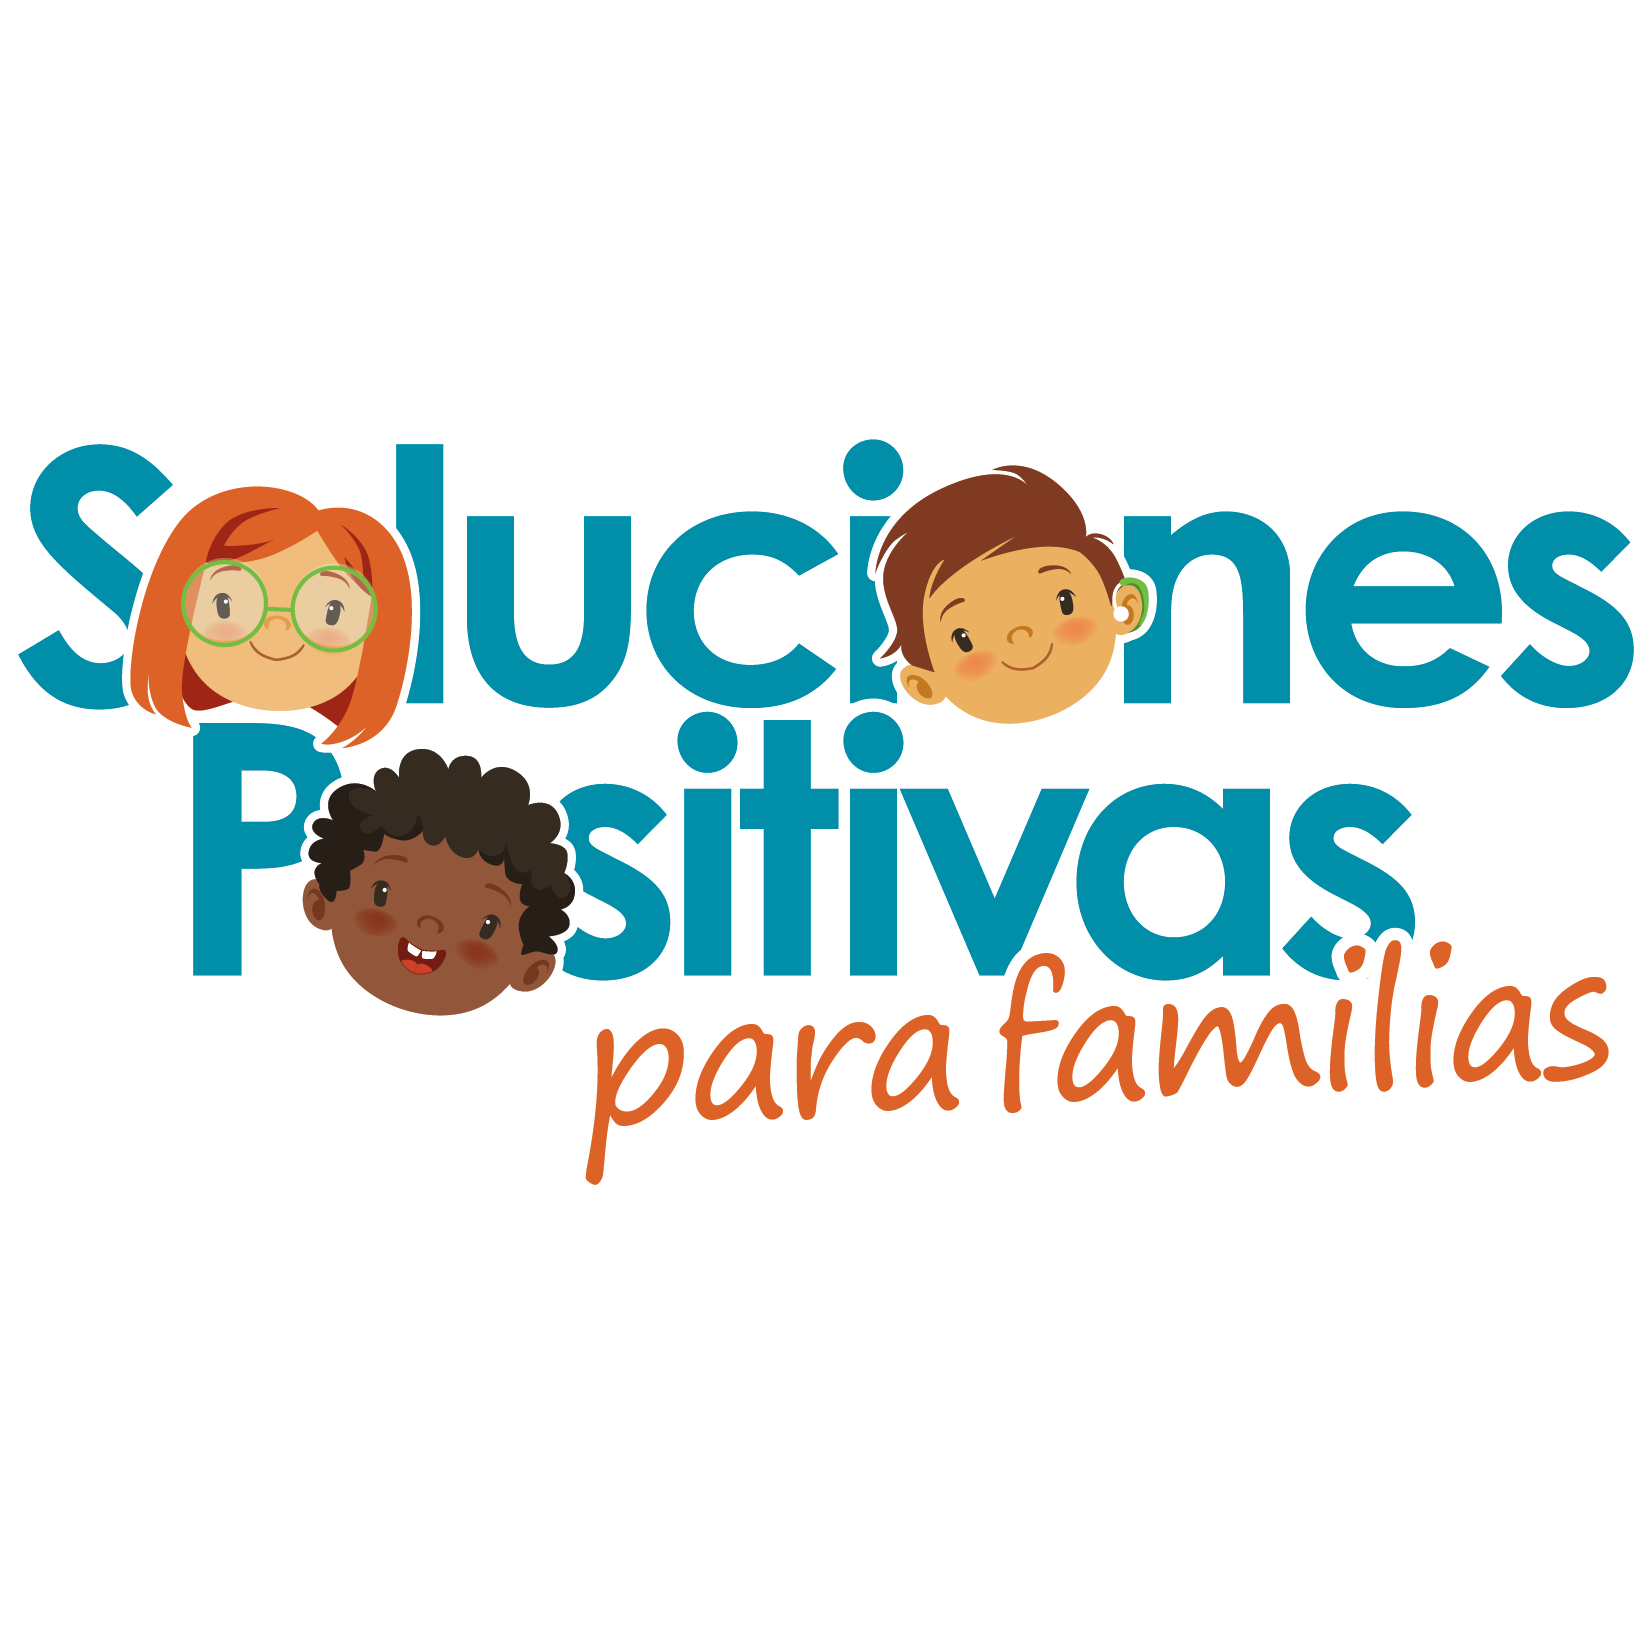 Soluciones Positivas para familias - Positive Solutions for Families Logo in Spanish